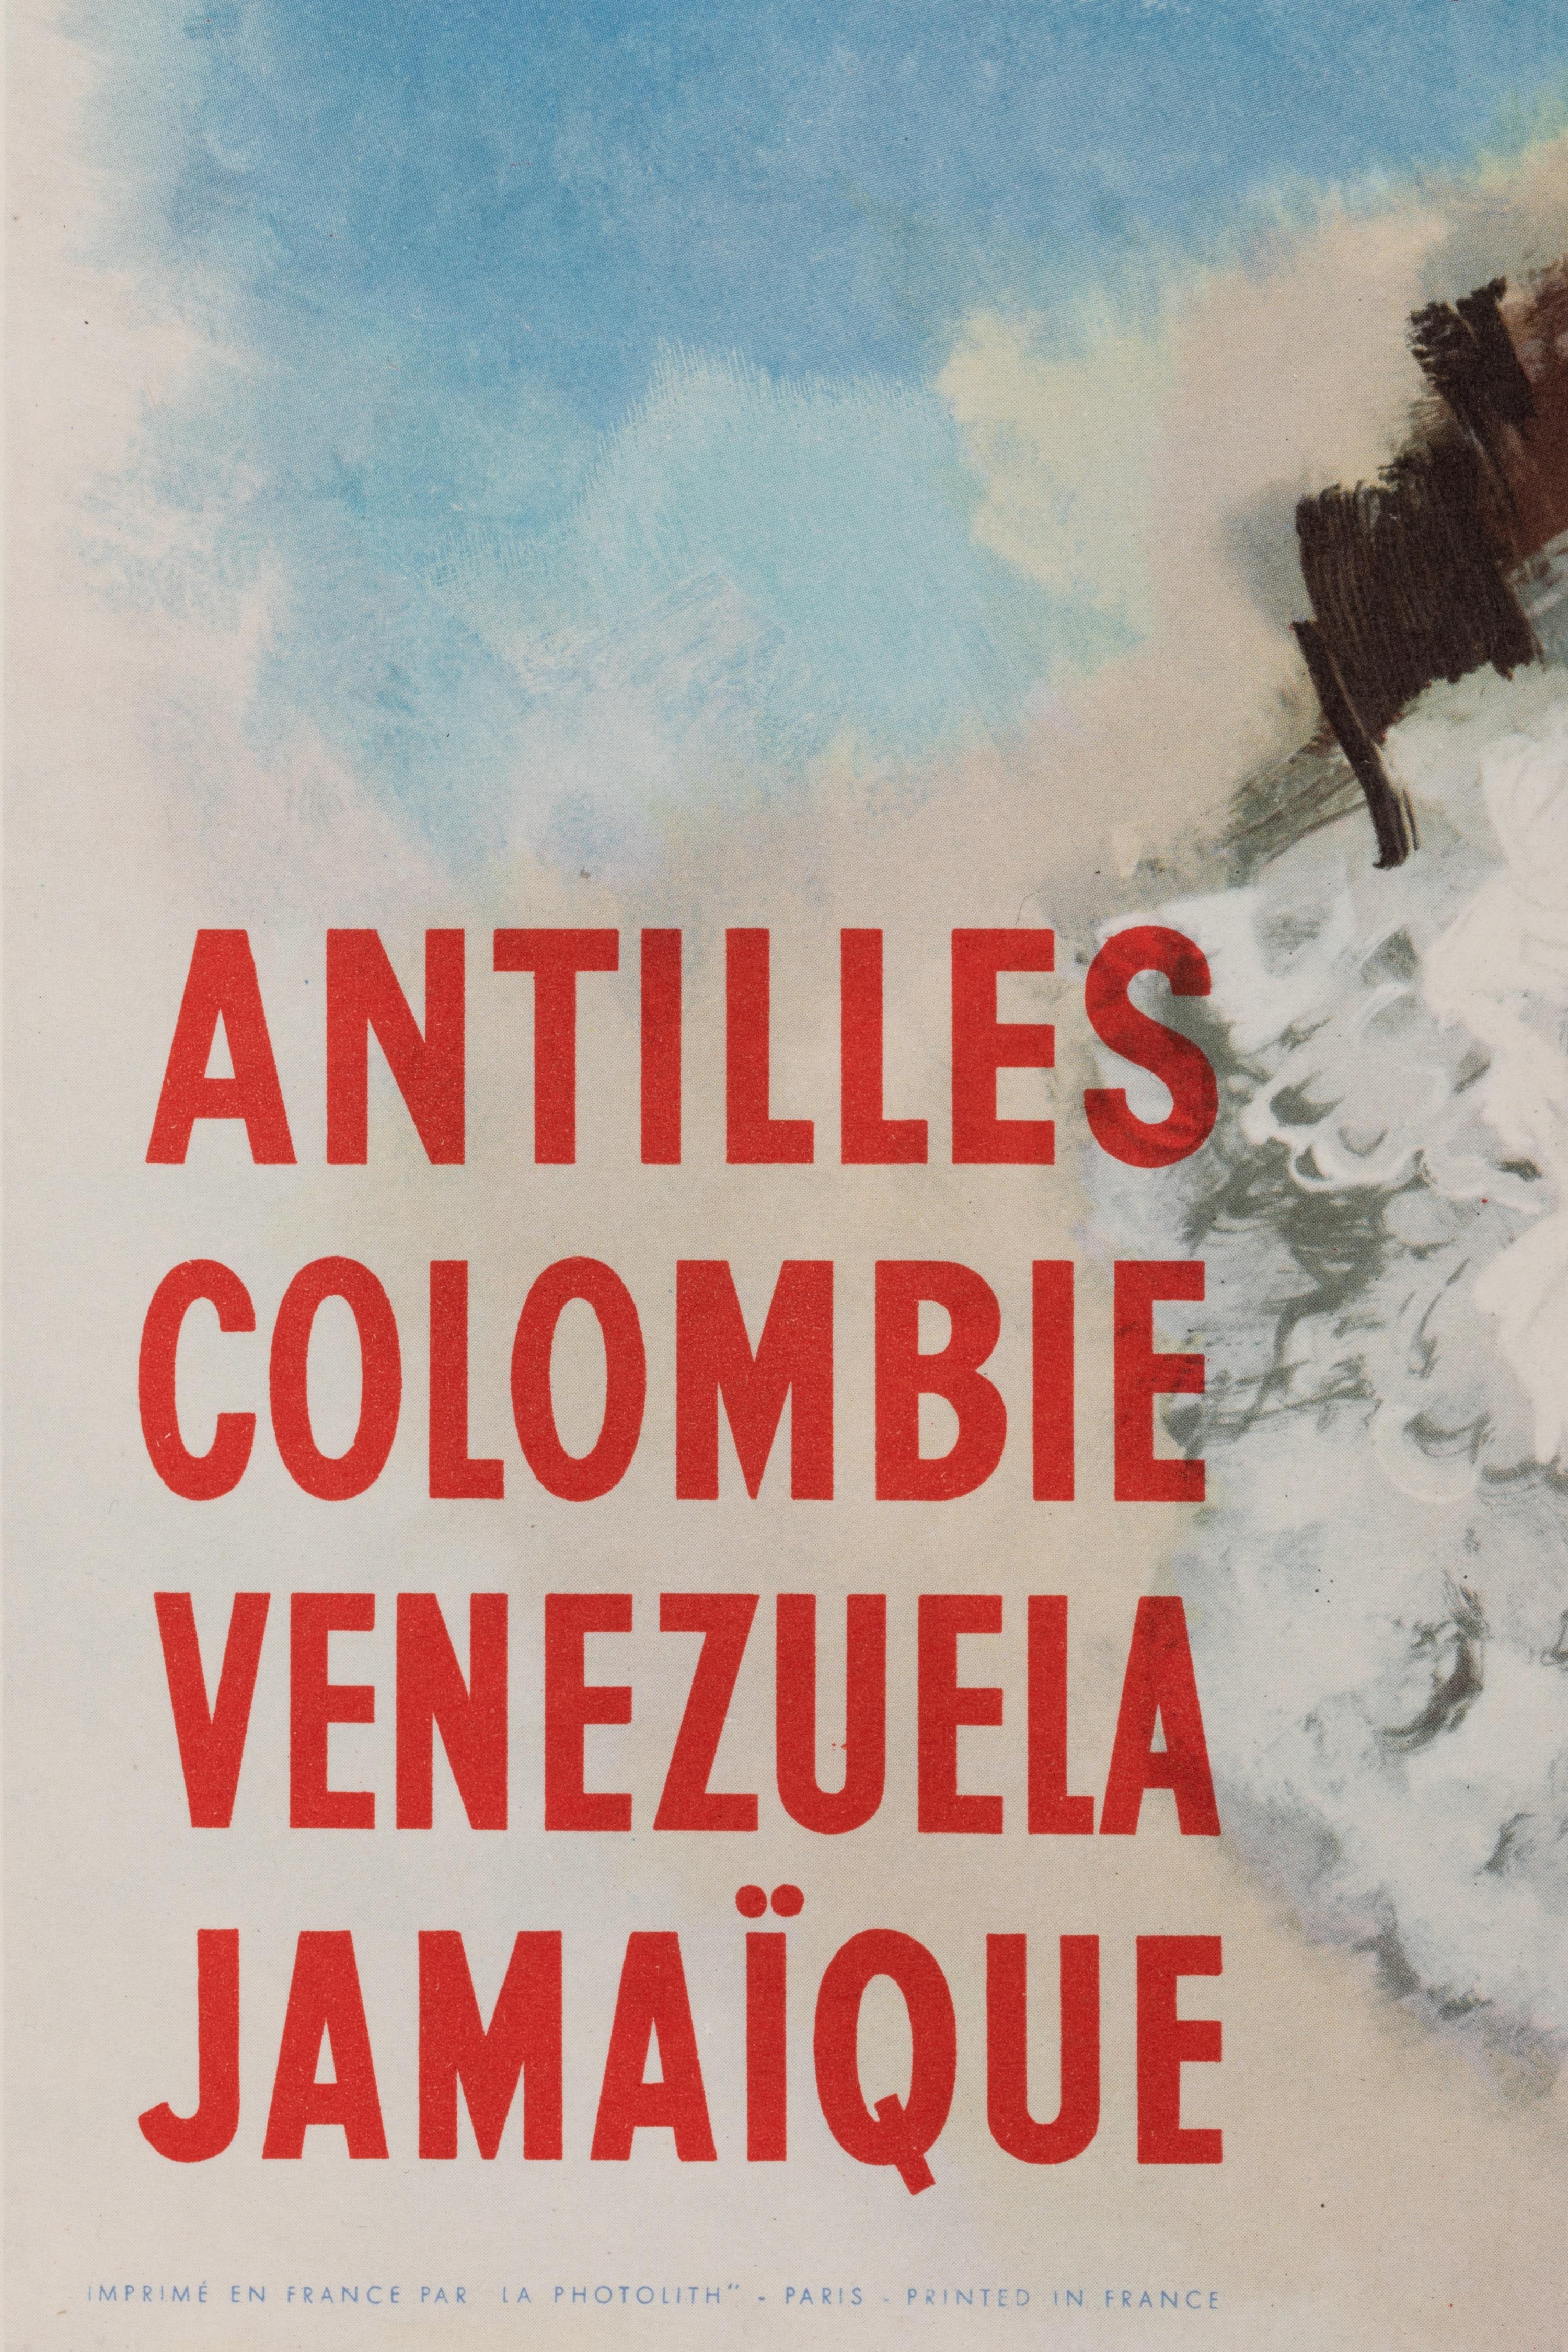 Cette affiche a été réalisée pour promouvoir le tourisme en Amérique centrale, notamment en Colombie, au Venezuela, en Jamaïque et aux Antilles, via les croisières de la Compagnie générale transatlantique. 

Artistics : Albert Brenet (1903 -